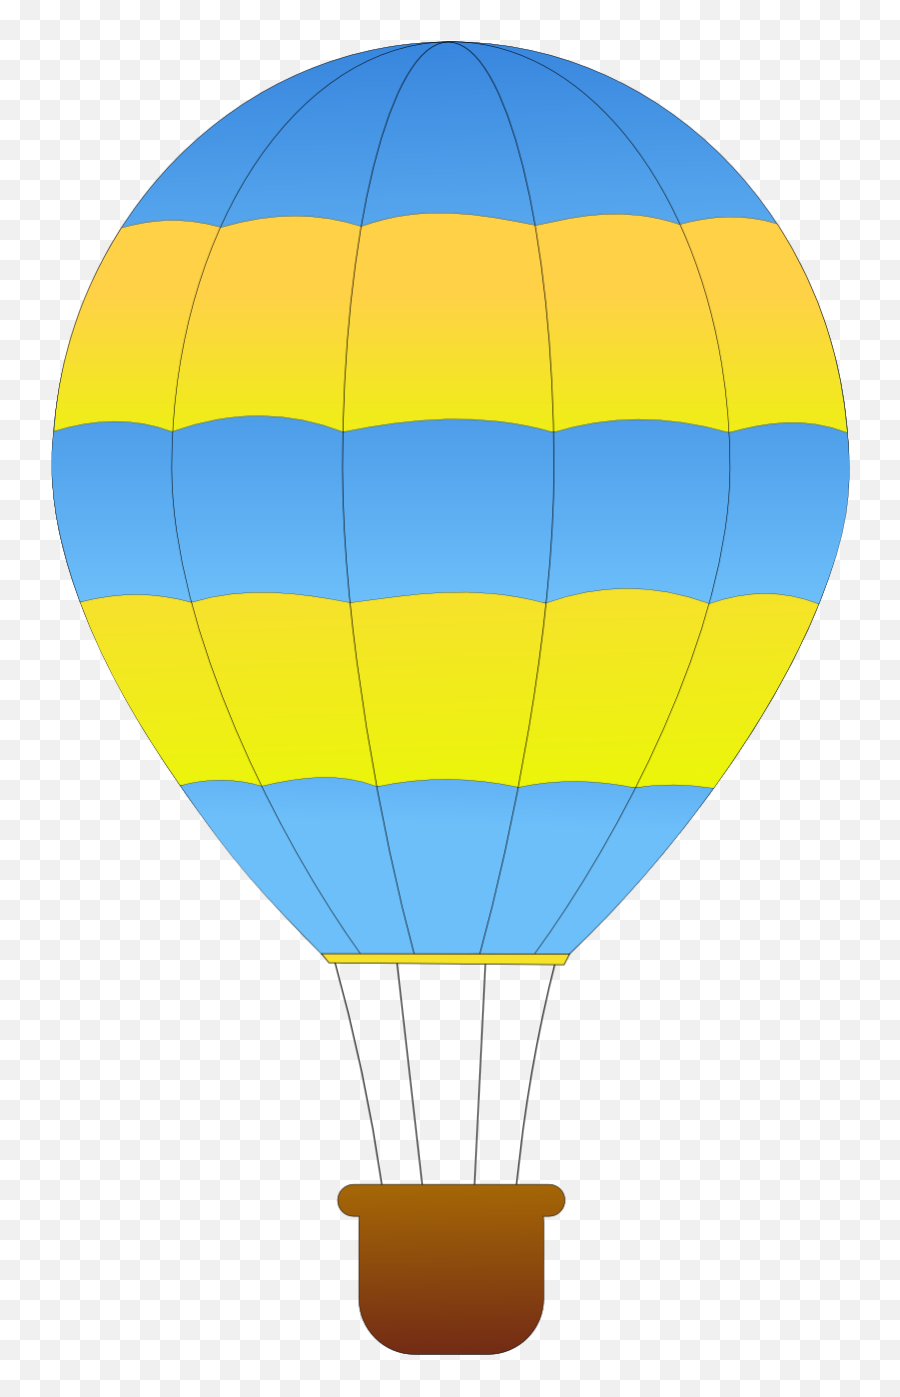 Hot Air Balloon Clipart Png 4 Image - Hot Air Balloon Clipart,Balloons Clipart Png